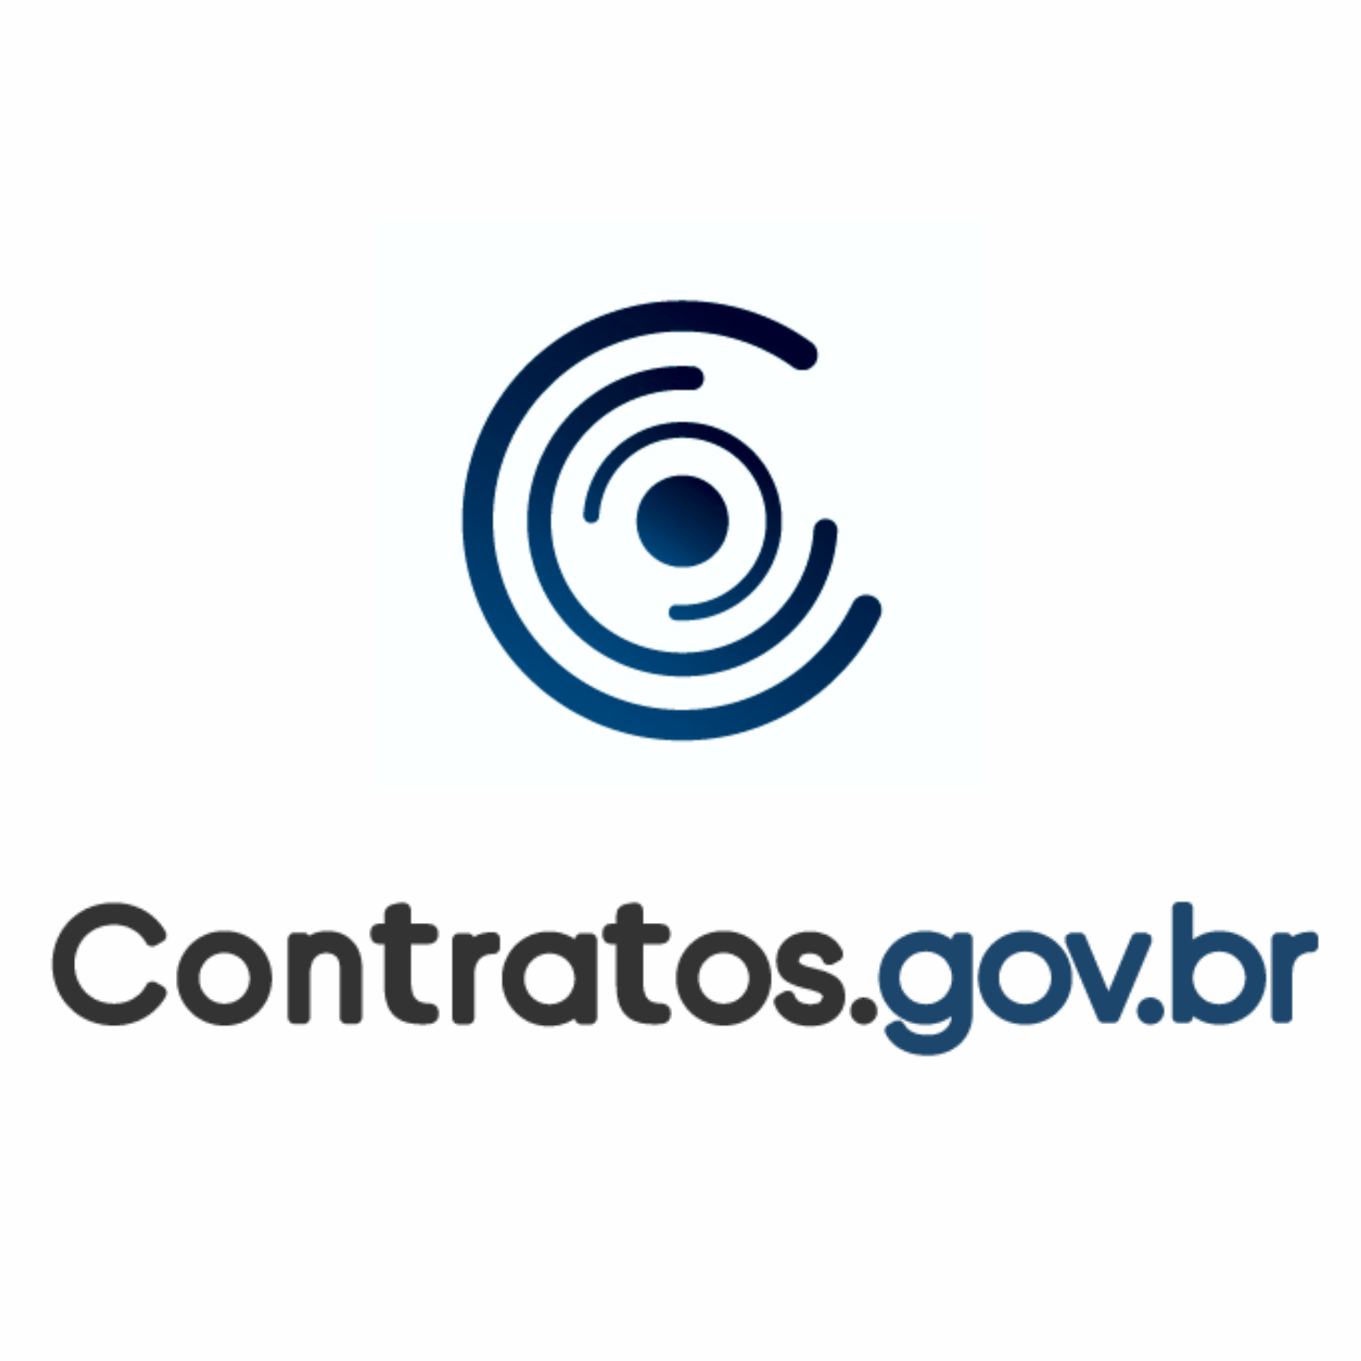 Treinamento Contratos.gov.br - TRT5